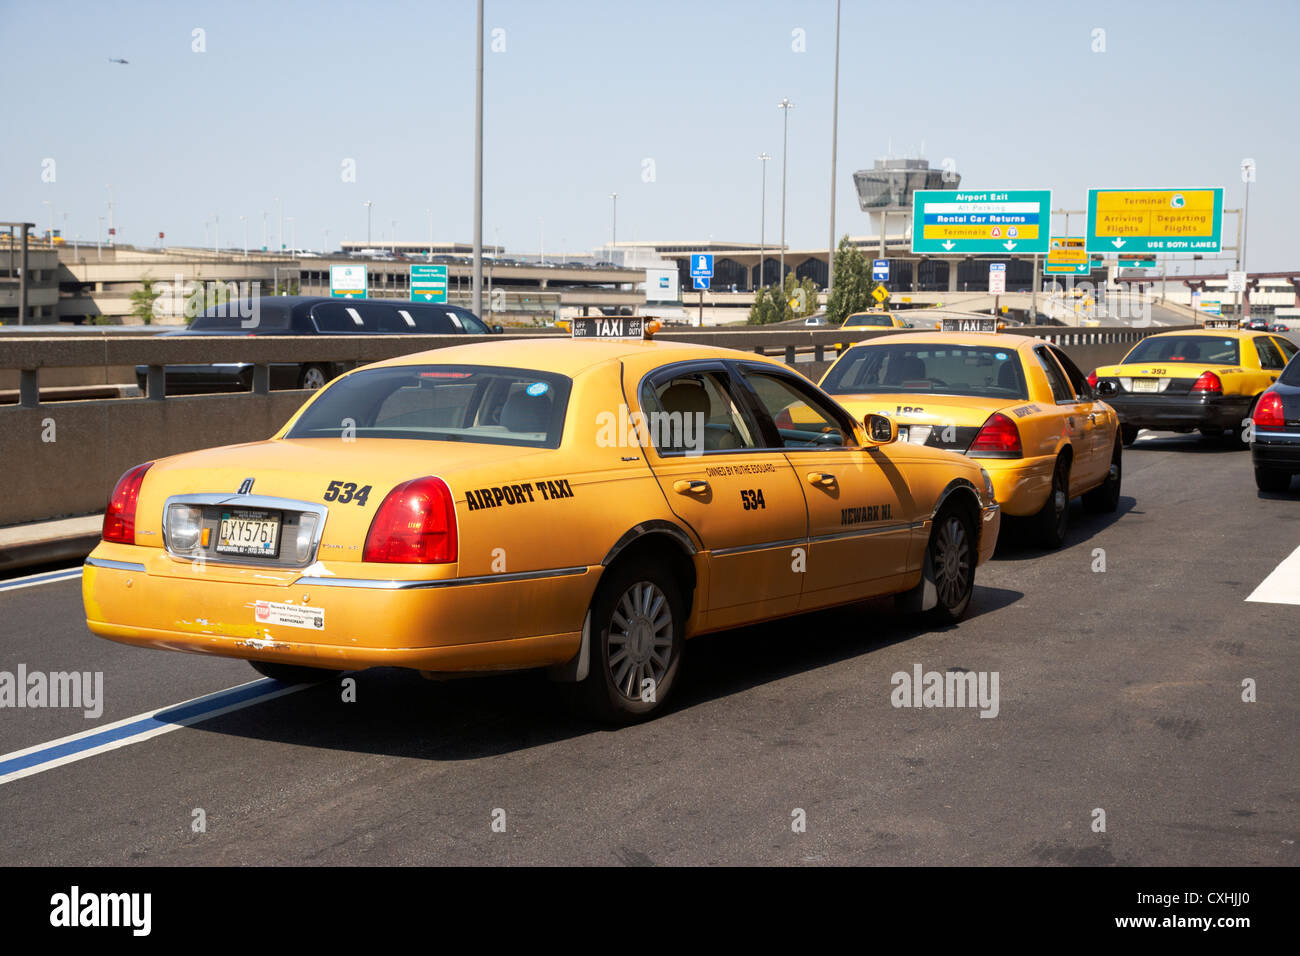 gelben Taxis Taxis vom Flughafen in Newark Liberty Flughafen New Jersey usa Stockfoto